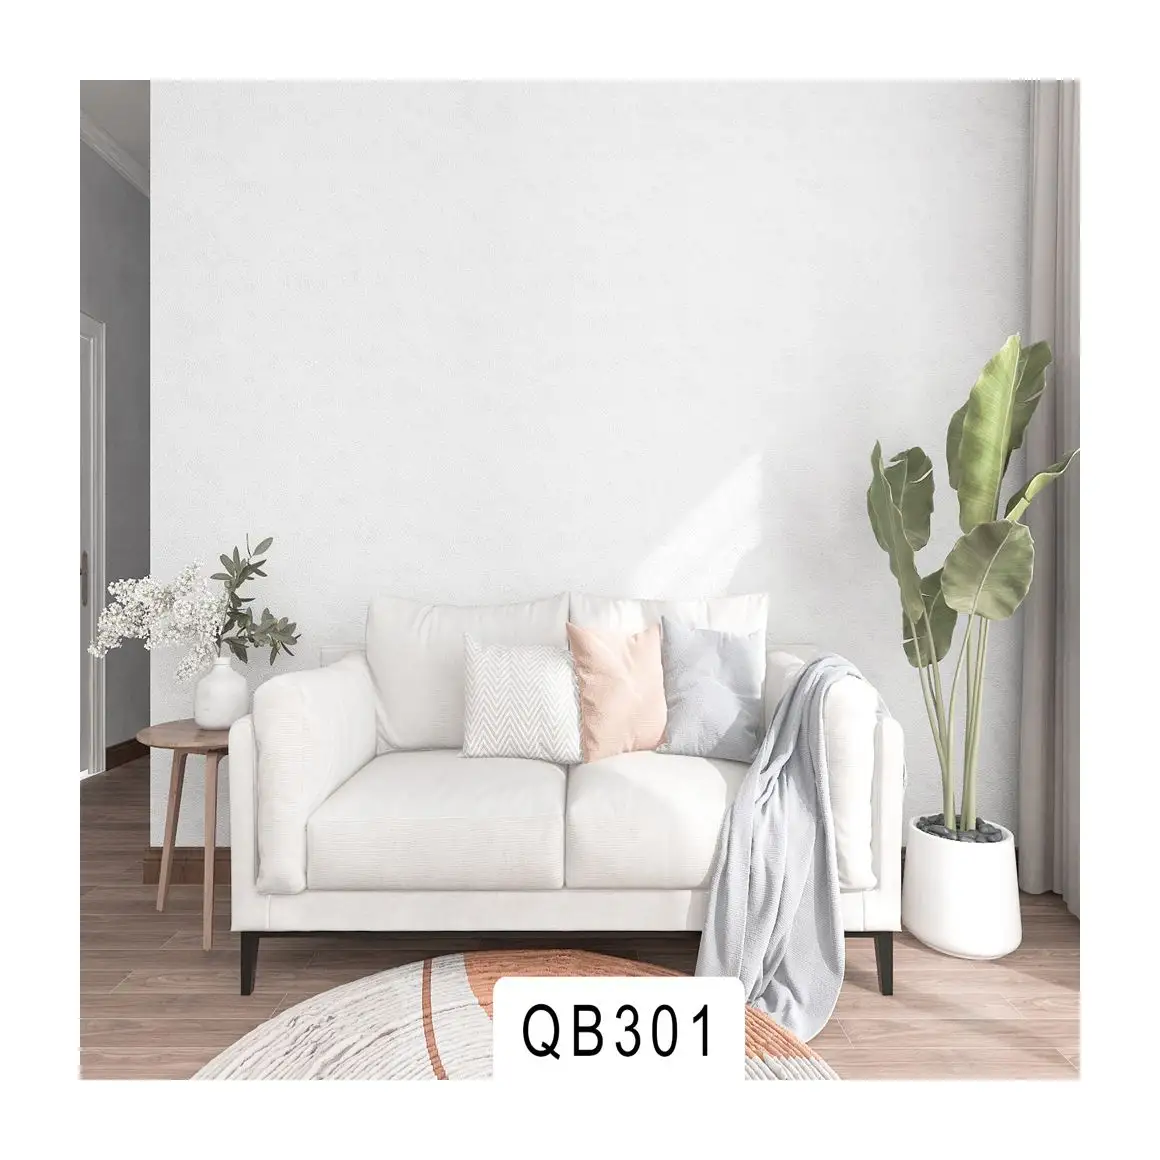 Modern style pvc living room plain wallpaper 3d effect white wallpaper